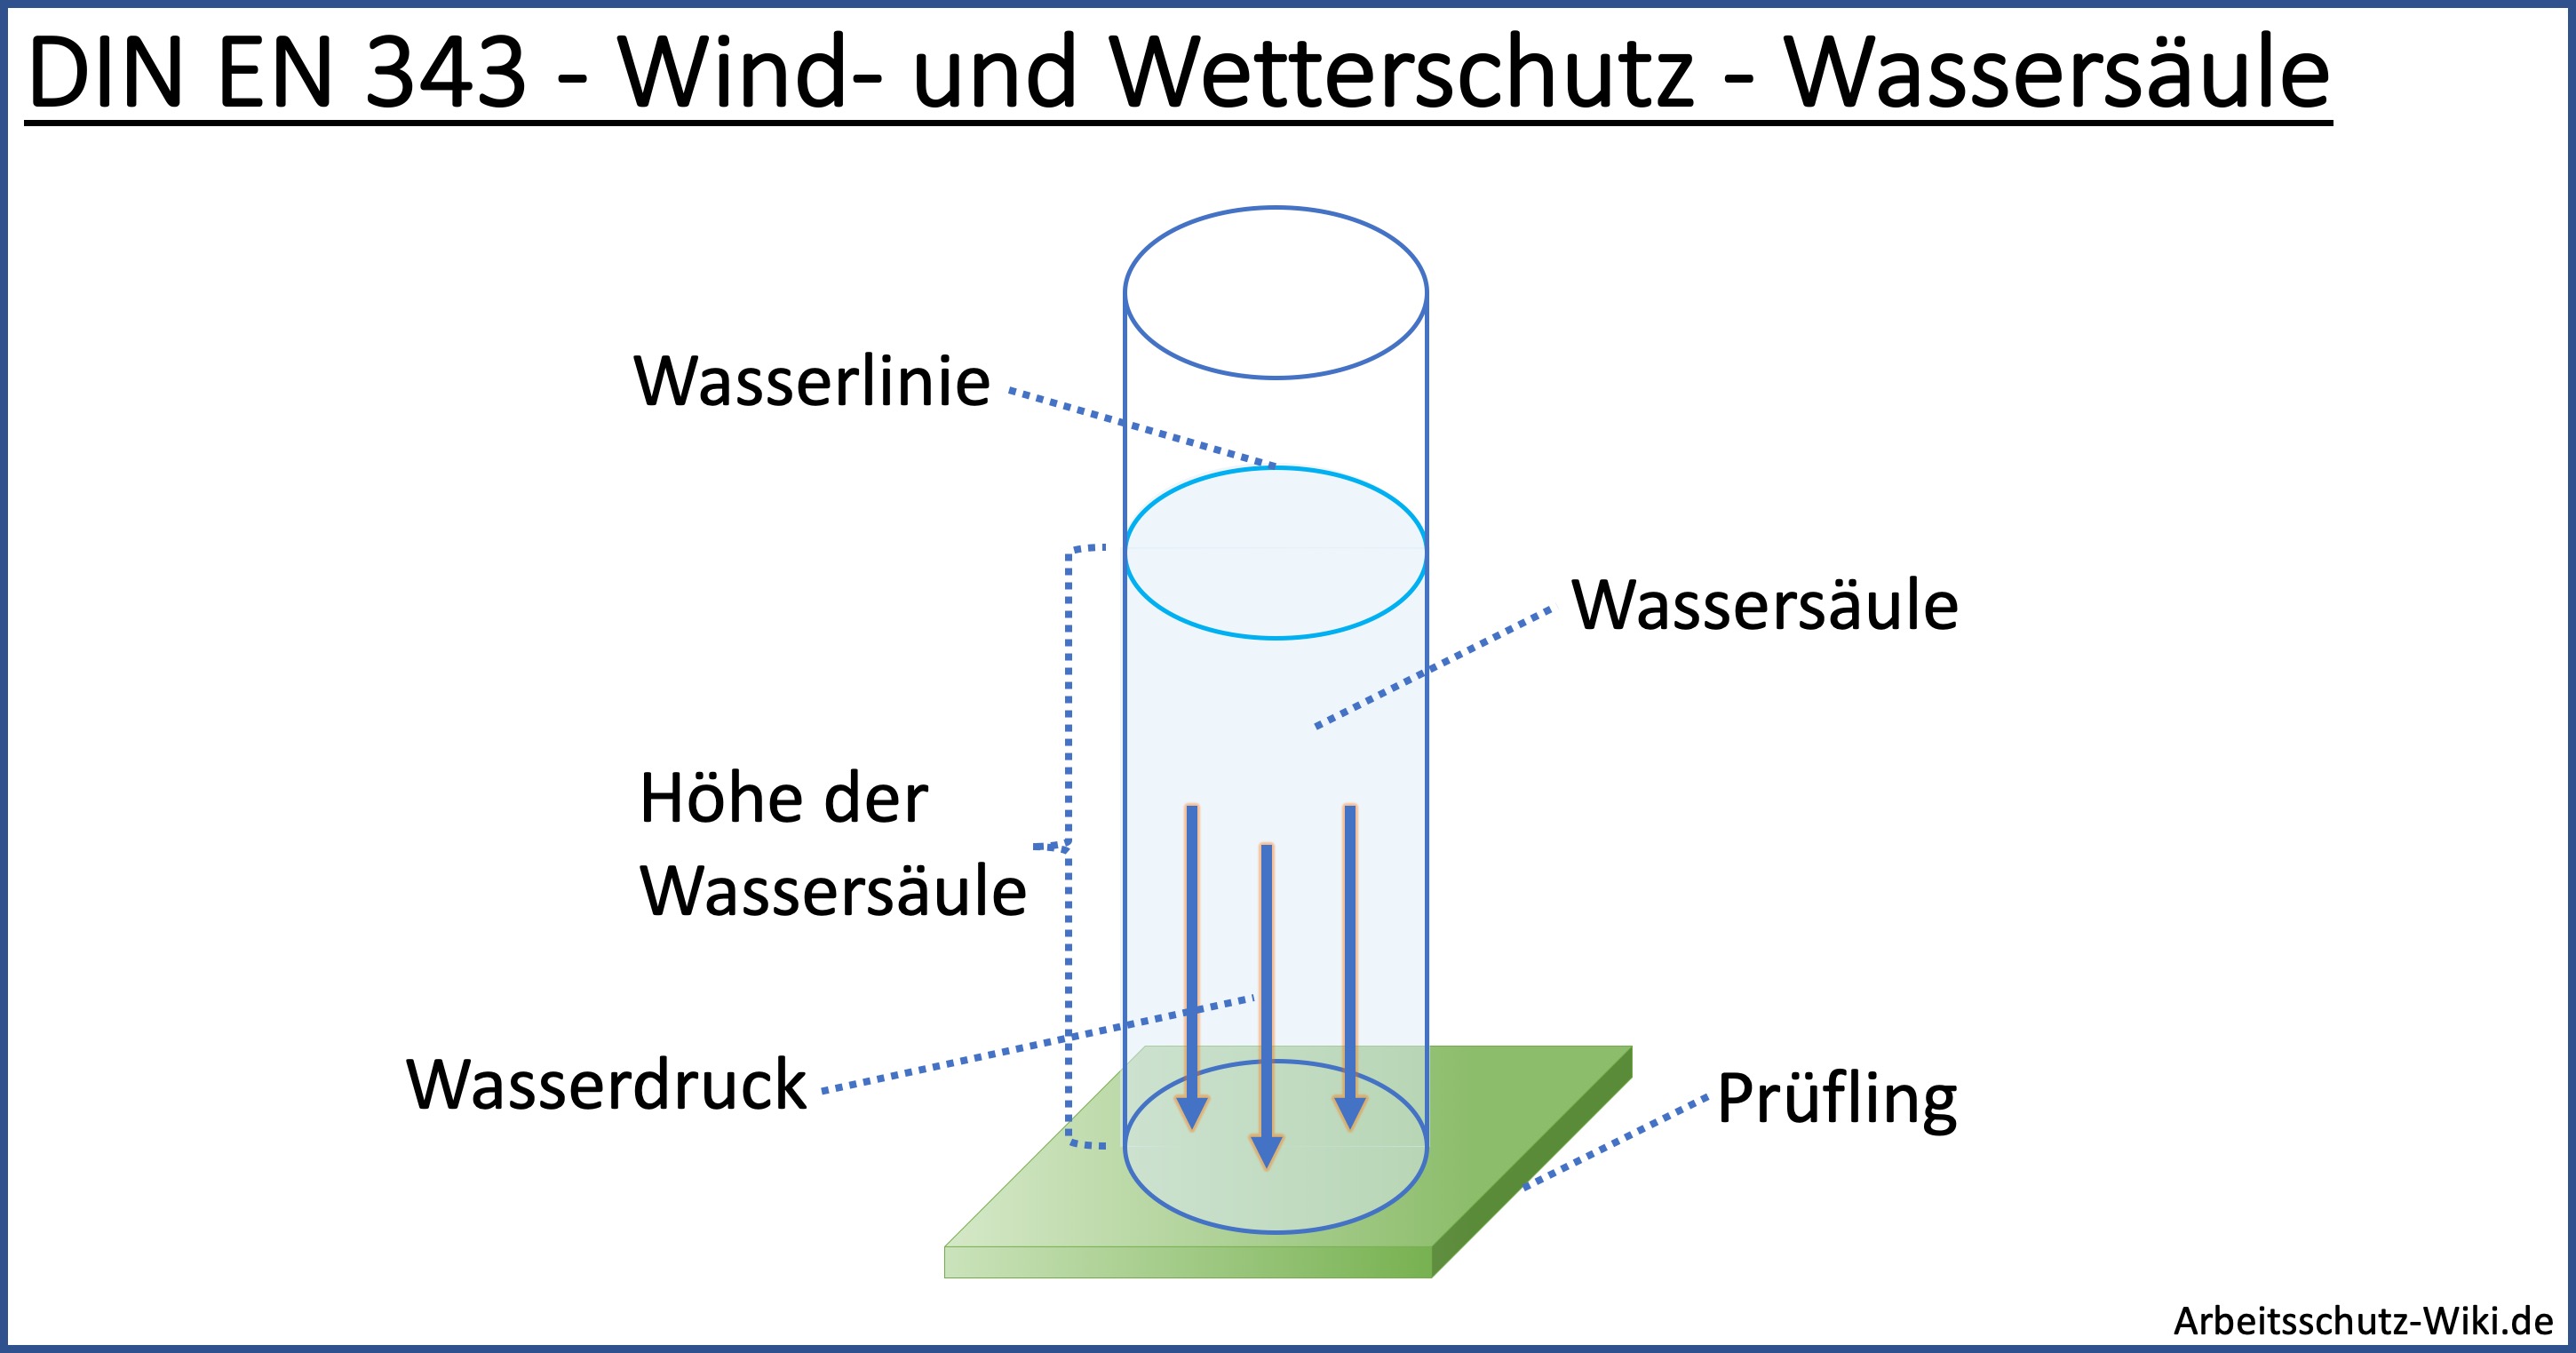 Wassersäule - DIN EN 343 - Wind und Wetterschutz.jpg